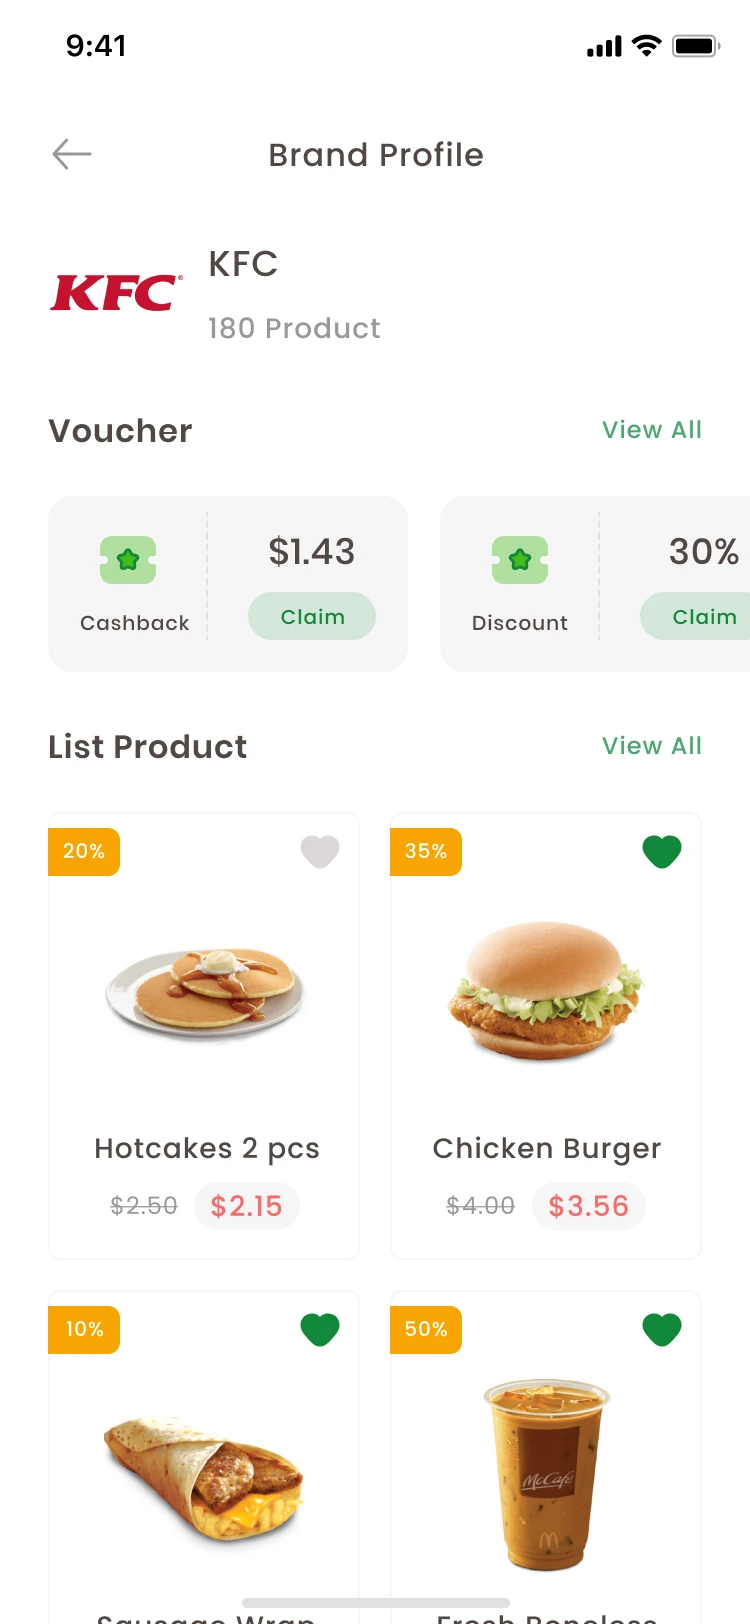 63屏蔬菜水果生鲜百货买菜配送应用UI程序UI设计套件 Fresh Grocery App Ui Kit .figma-UI/UX、ui套件、主页、付款、应用、支付、网购、表单、详情、预订-到位啦UI